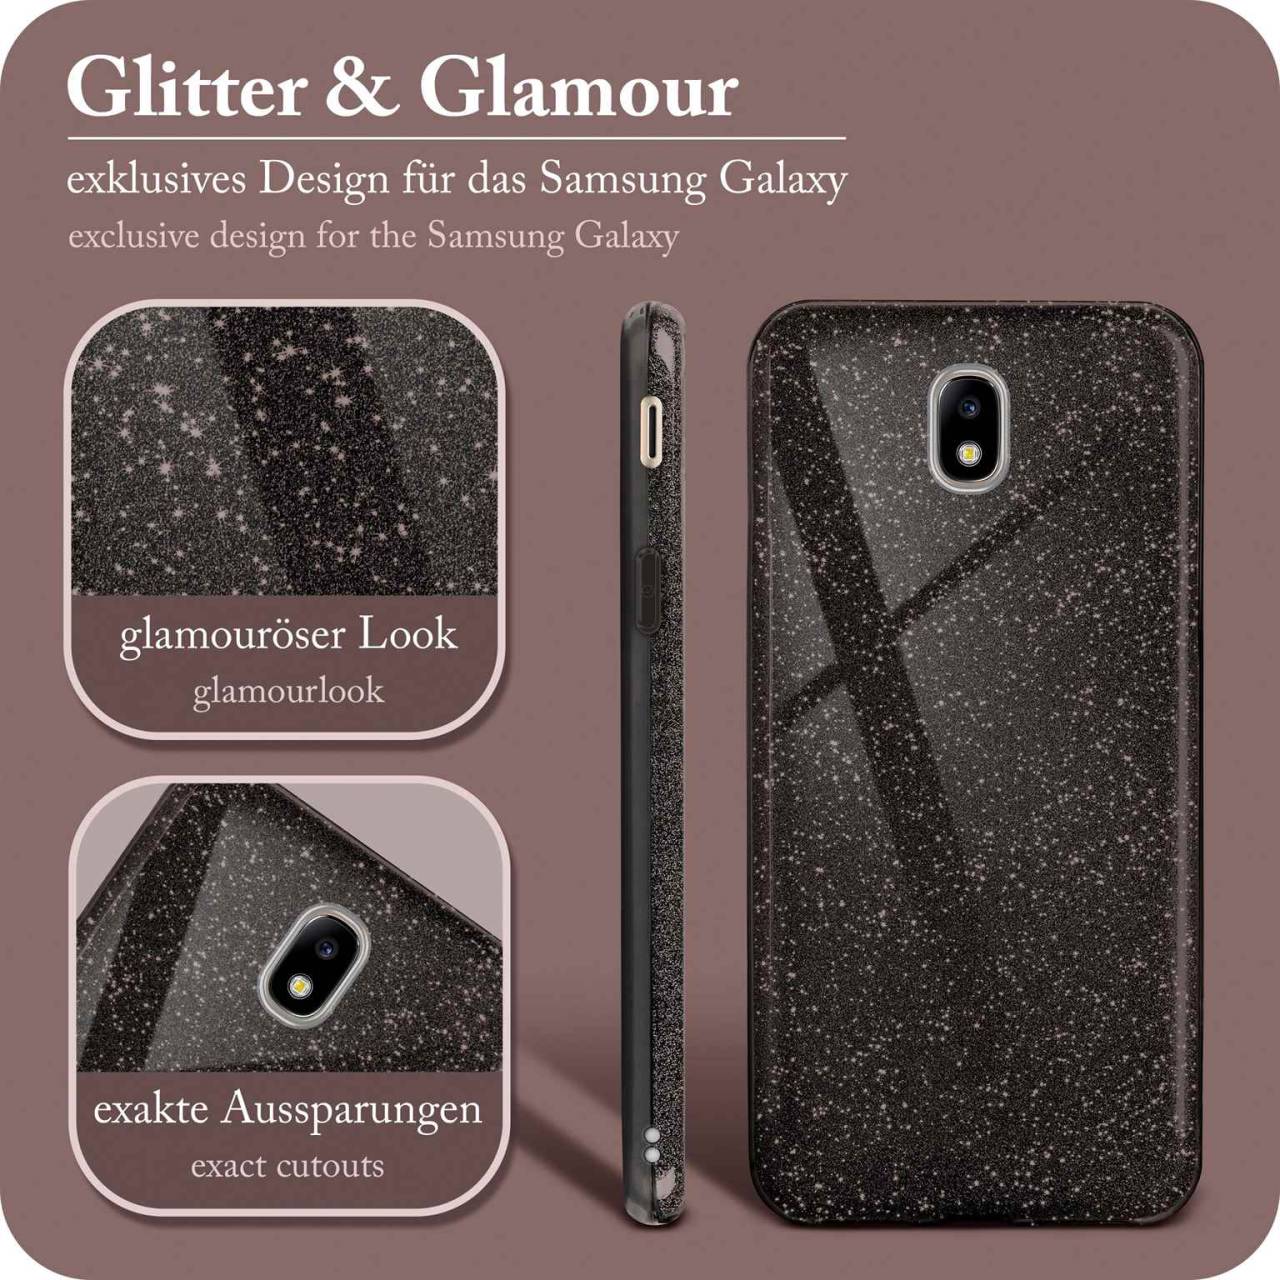 ONEFLOW Glitter Case für Samsung Galaxy J5 (2017) – Glitzer Hülle aus TPU, designer Handyhülle